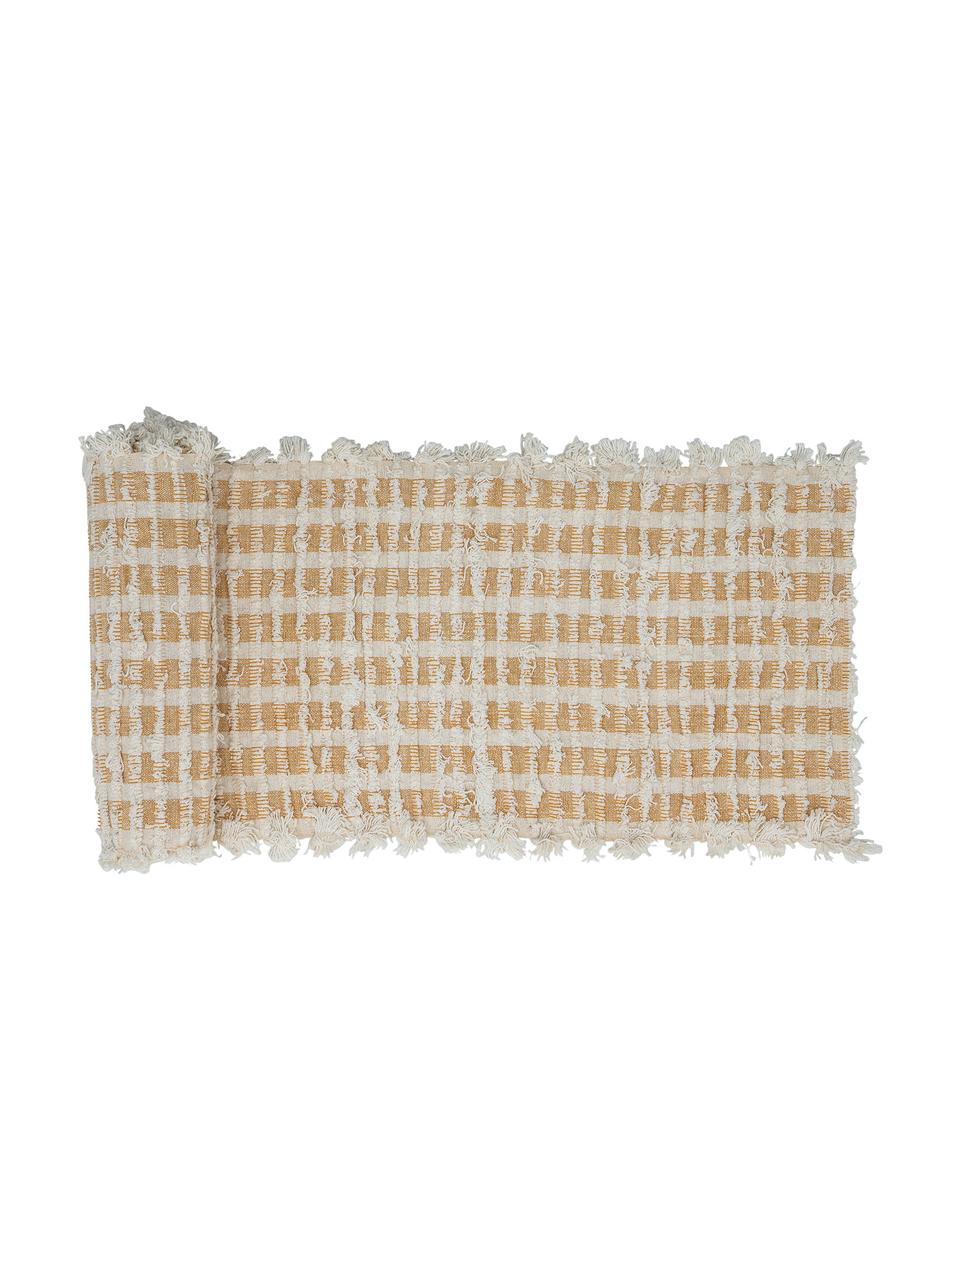 Tischläufer Riala, 96% Baumwolle, 4% andere Fasern, Beige, Creme, 35 x 180 cm